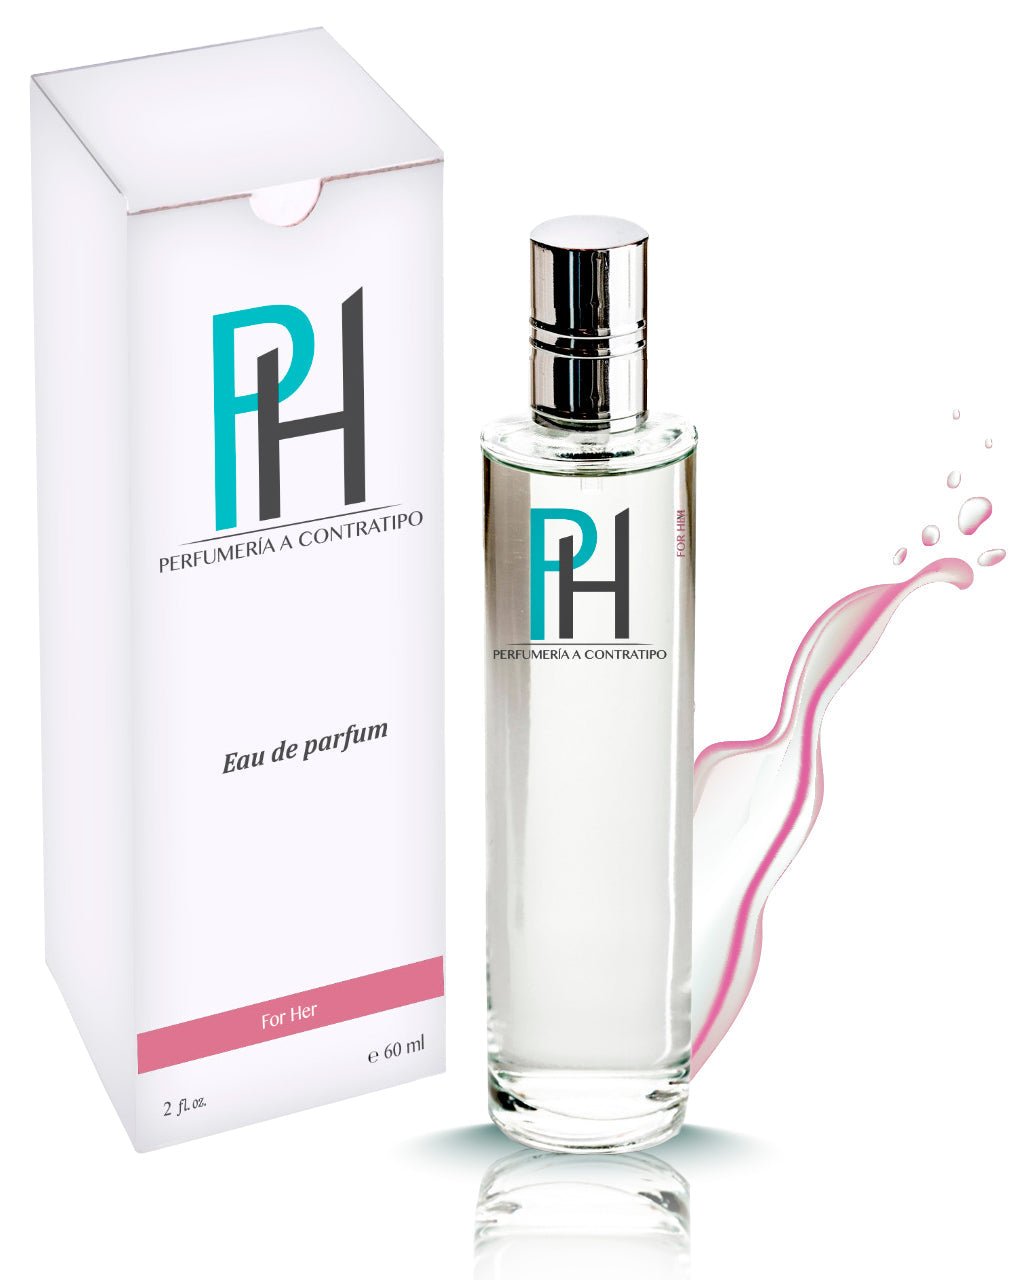 Perfume Tous In Hevan De 60 ml - PH Perfumería a Contratipo